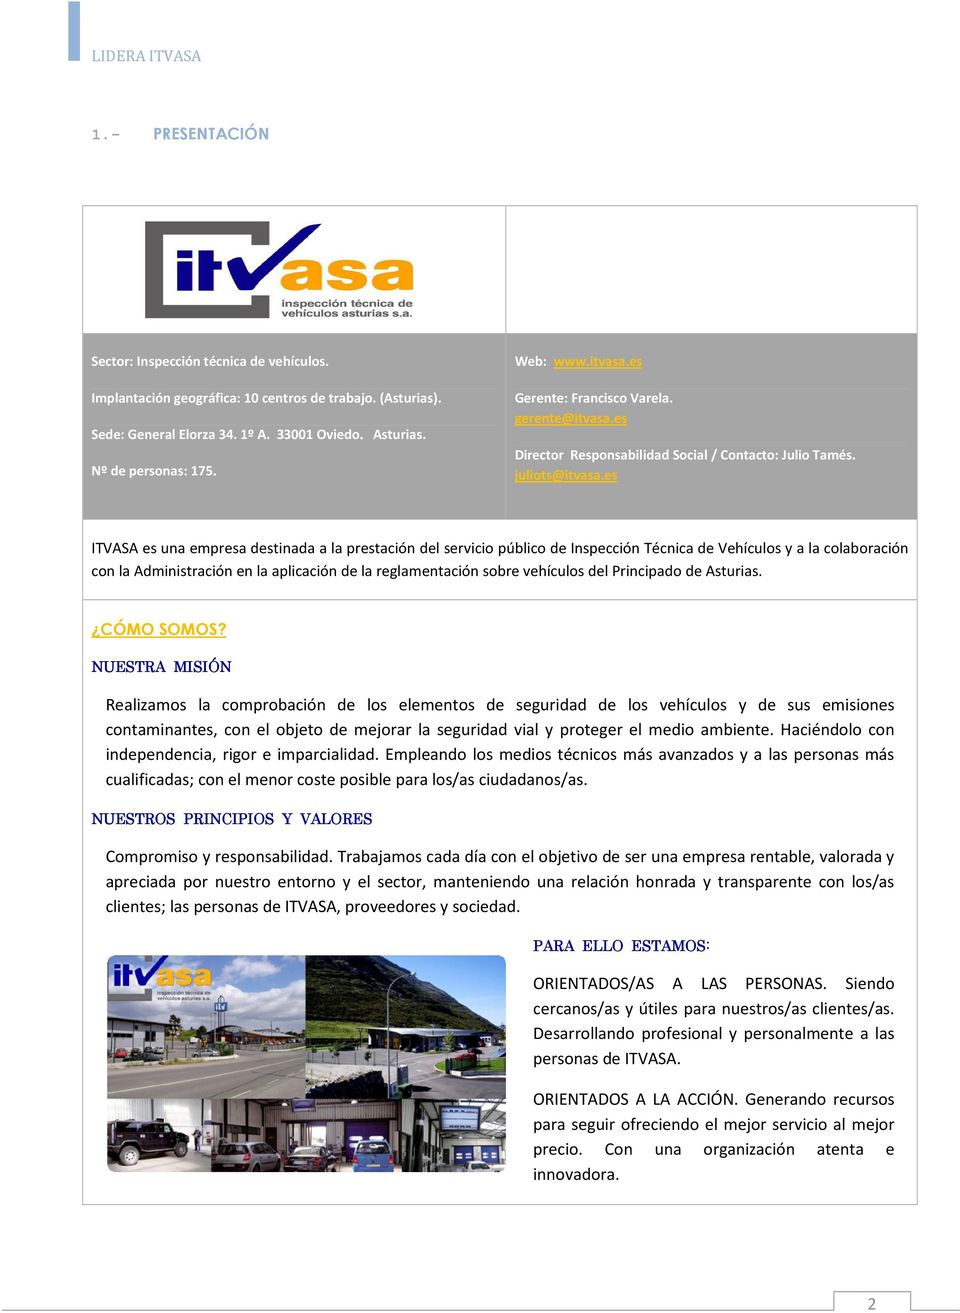 es ITVASA es una empresa destinada a la prestación del servicio público de Inspección Técnica de Vehículos y a la colaboración con la Administración en la aplicación de la reglamentación sobre